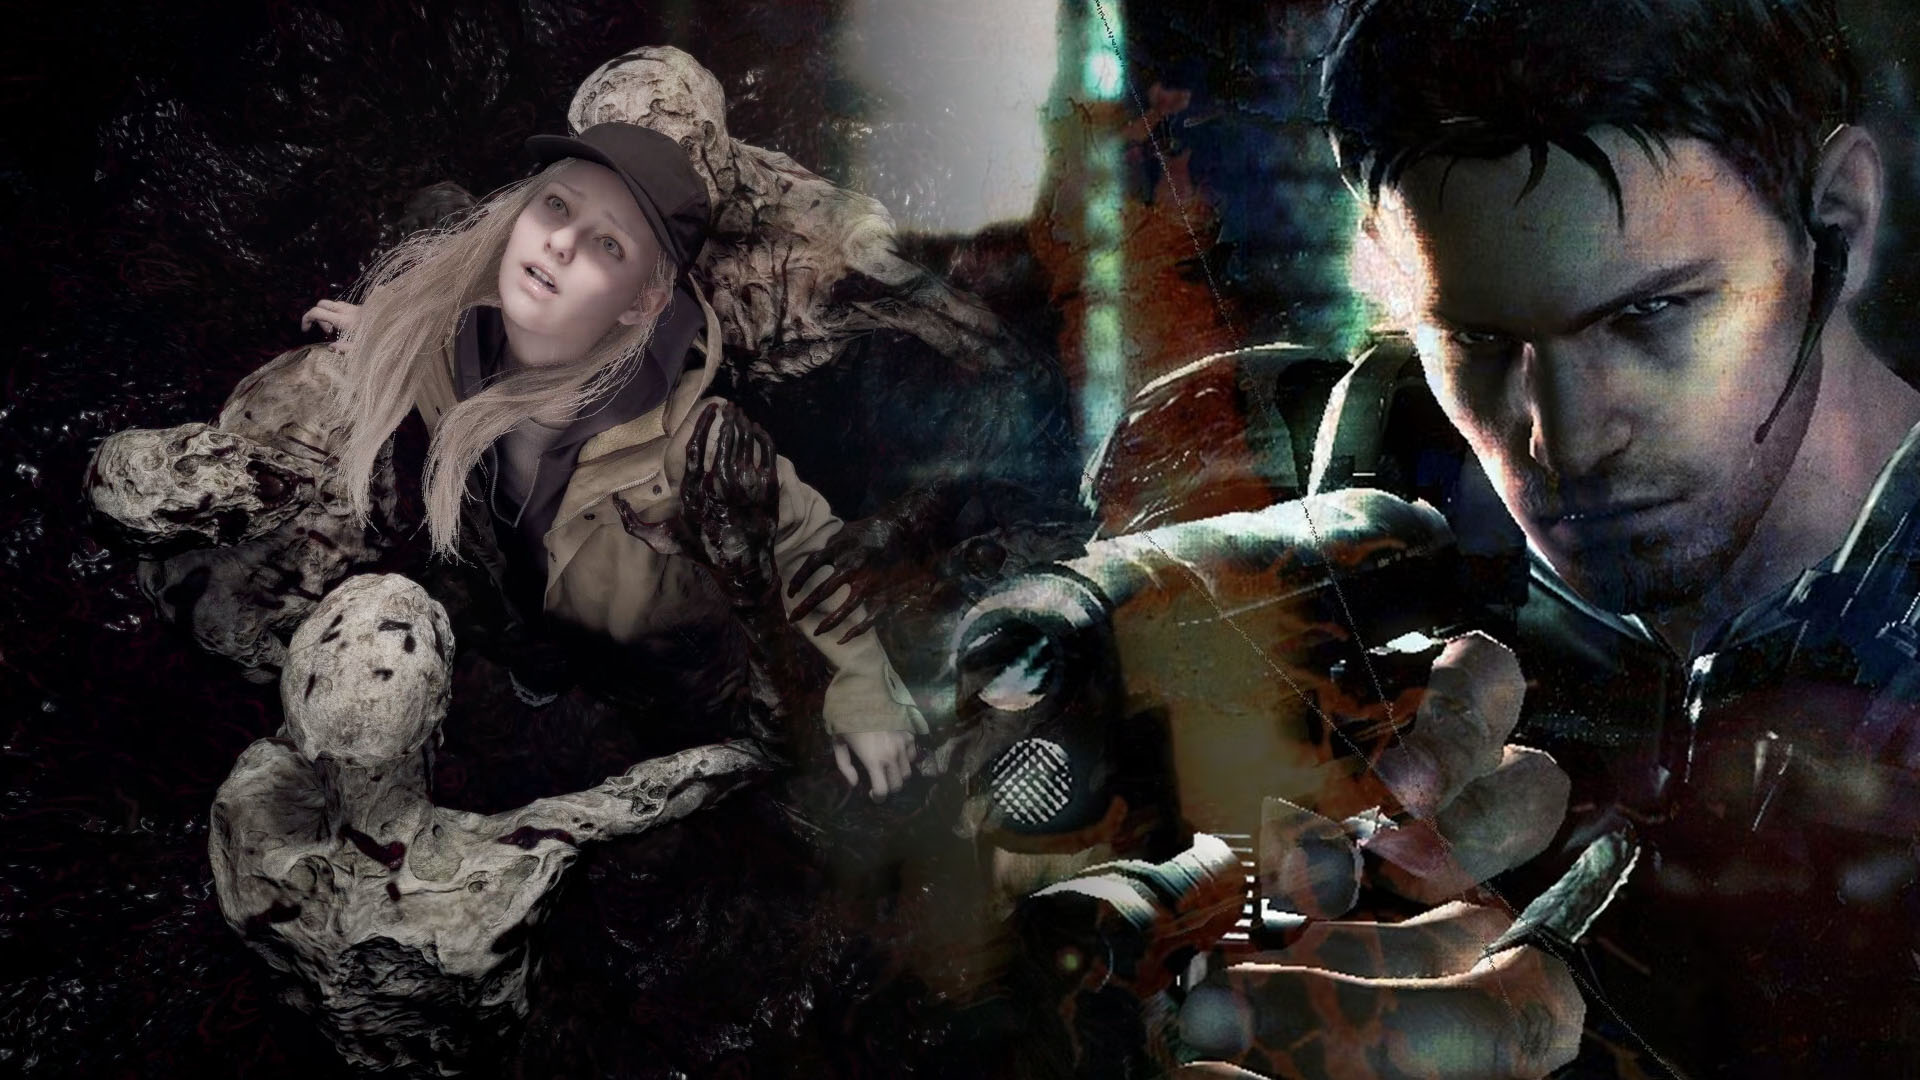 Resident Evil leaker teases return of Jill Valentine for Resident Evil 9 